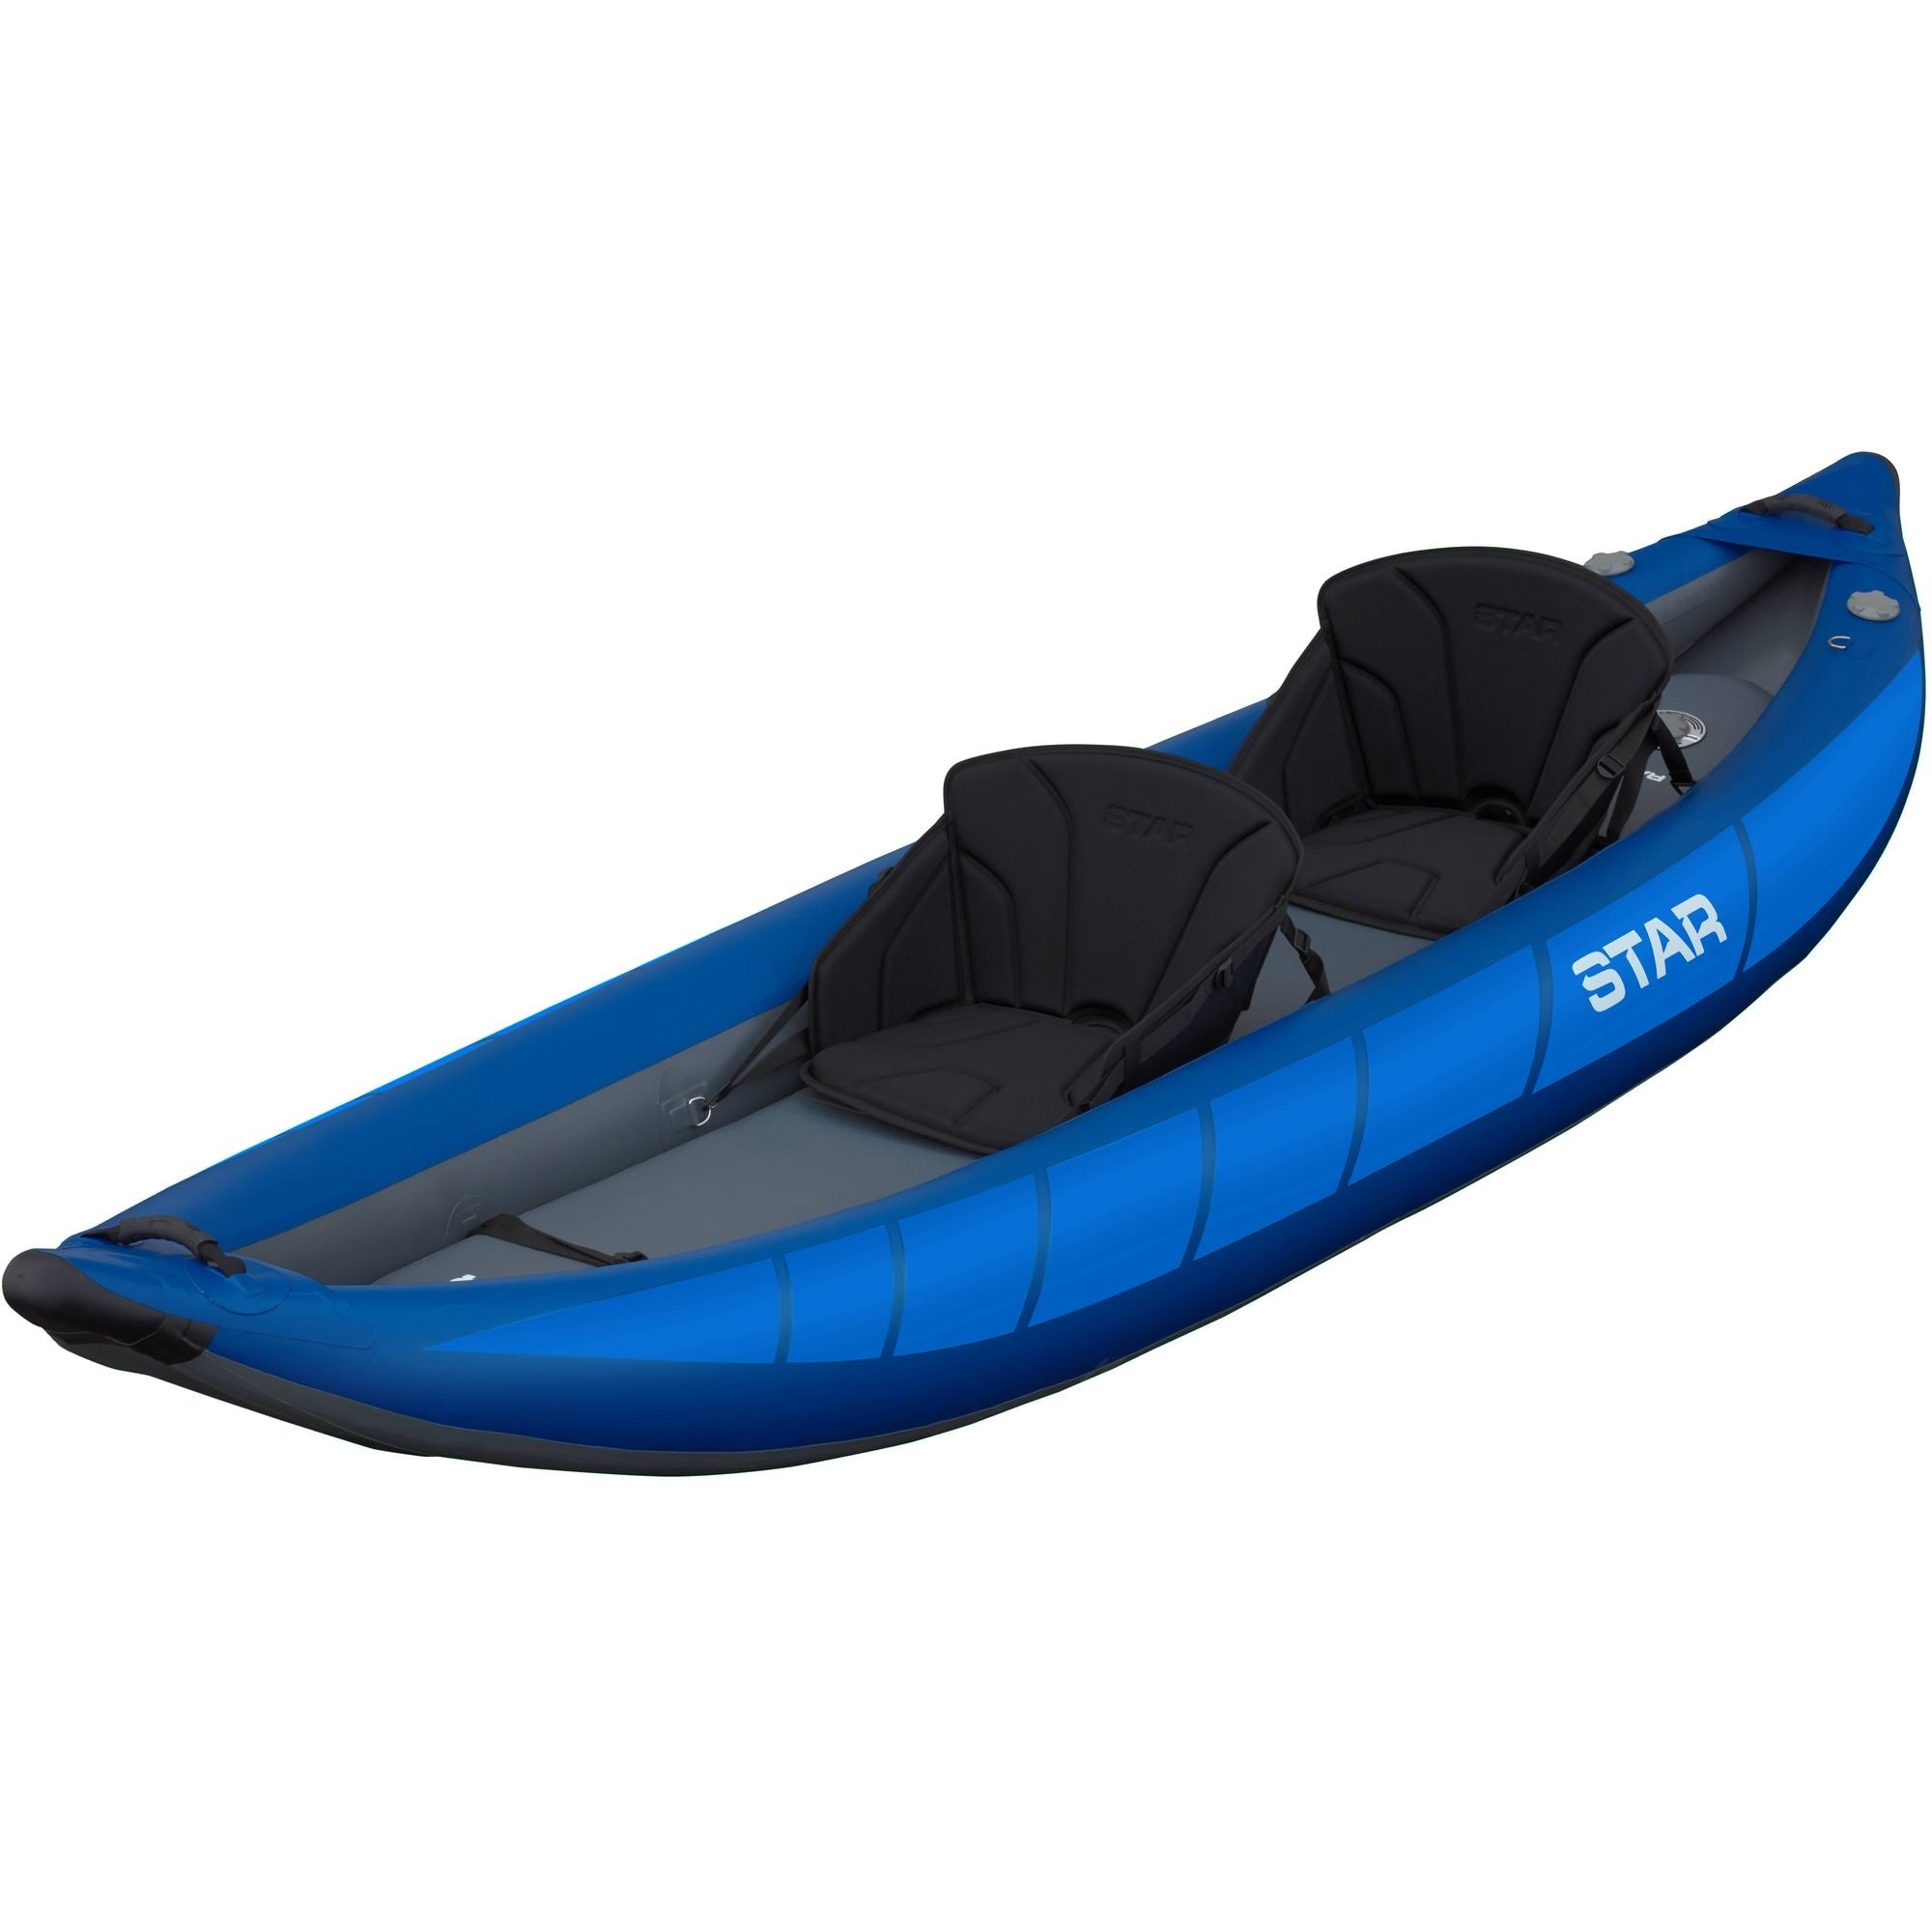 STAR - Raven II Inflatable Kayak